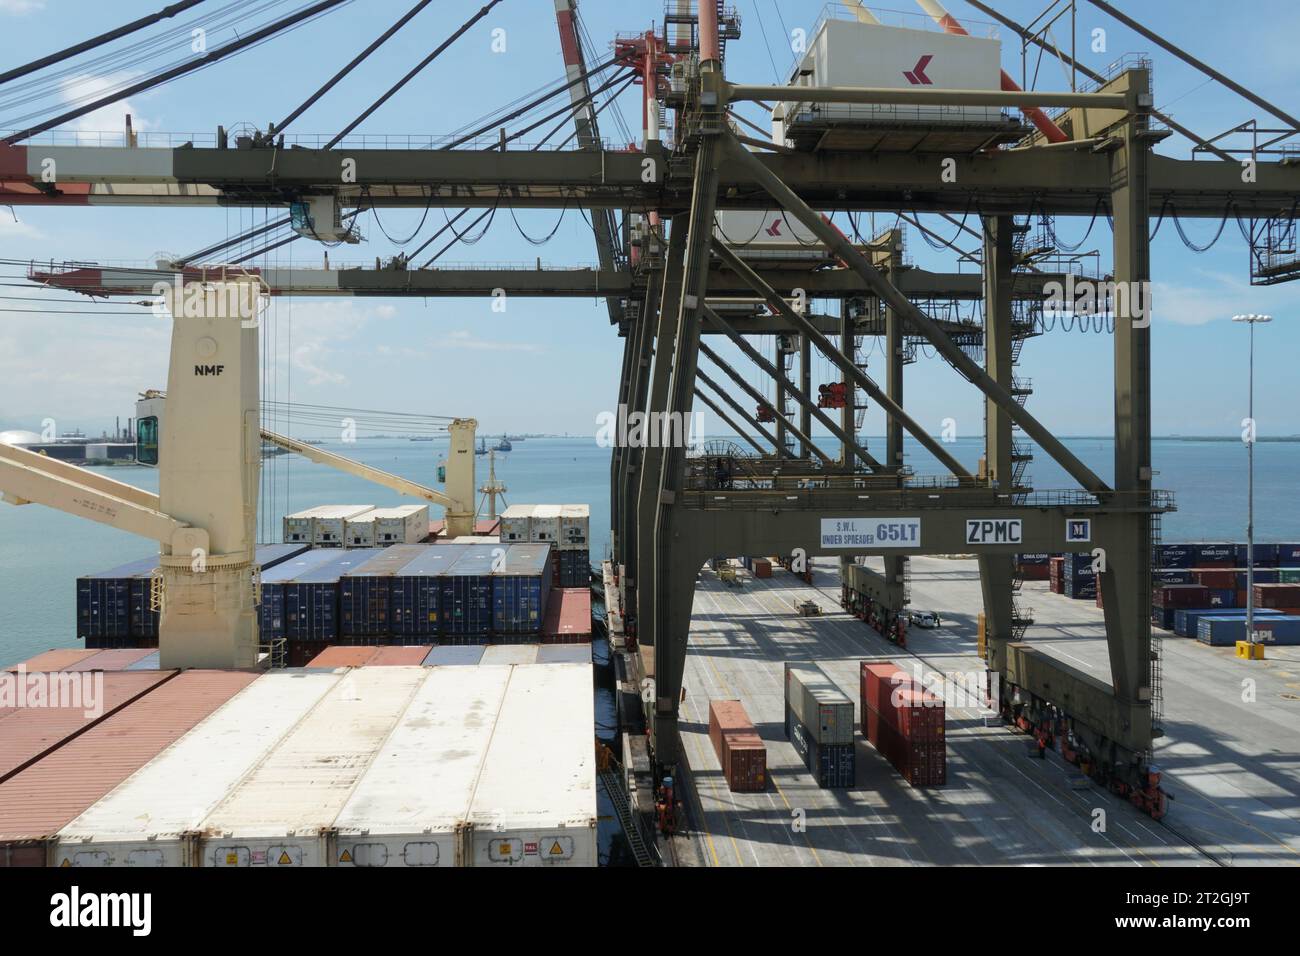 Navire porte-conteneurs équipé de grues de navire pendant l'opération de chargement et déchargement de cargaison par des grues portiques. Banque D'Images